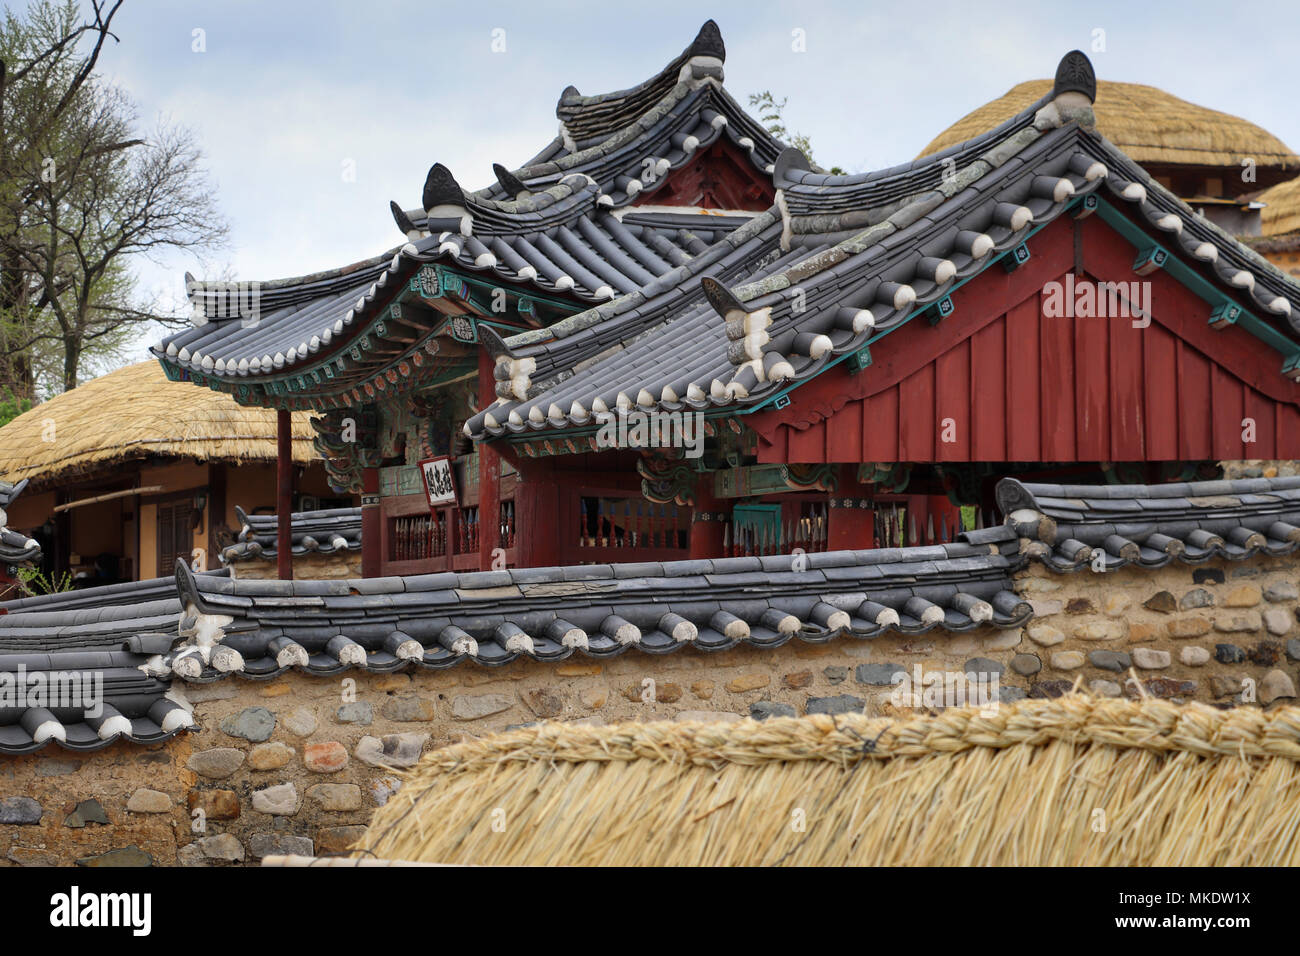 Ein gefliestes Dach Pavillon auf der Yangdong Folk Village in der Nähe von Gyeongju, Südkorea, hat ein dichtes Dach, Steinmauer Gehäuse; in der Nähe Häuser sind reetgedeckte Stockfoto